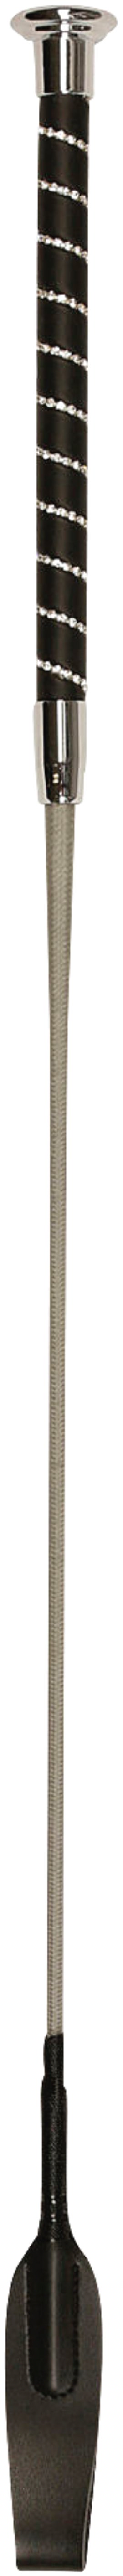 Springgerte mit Klatsche silber 65 cm